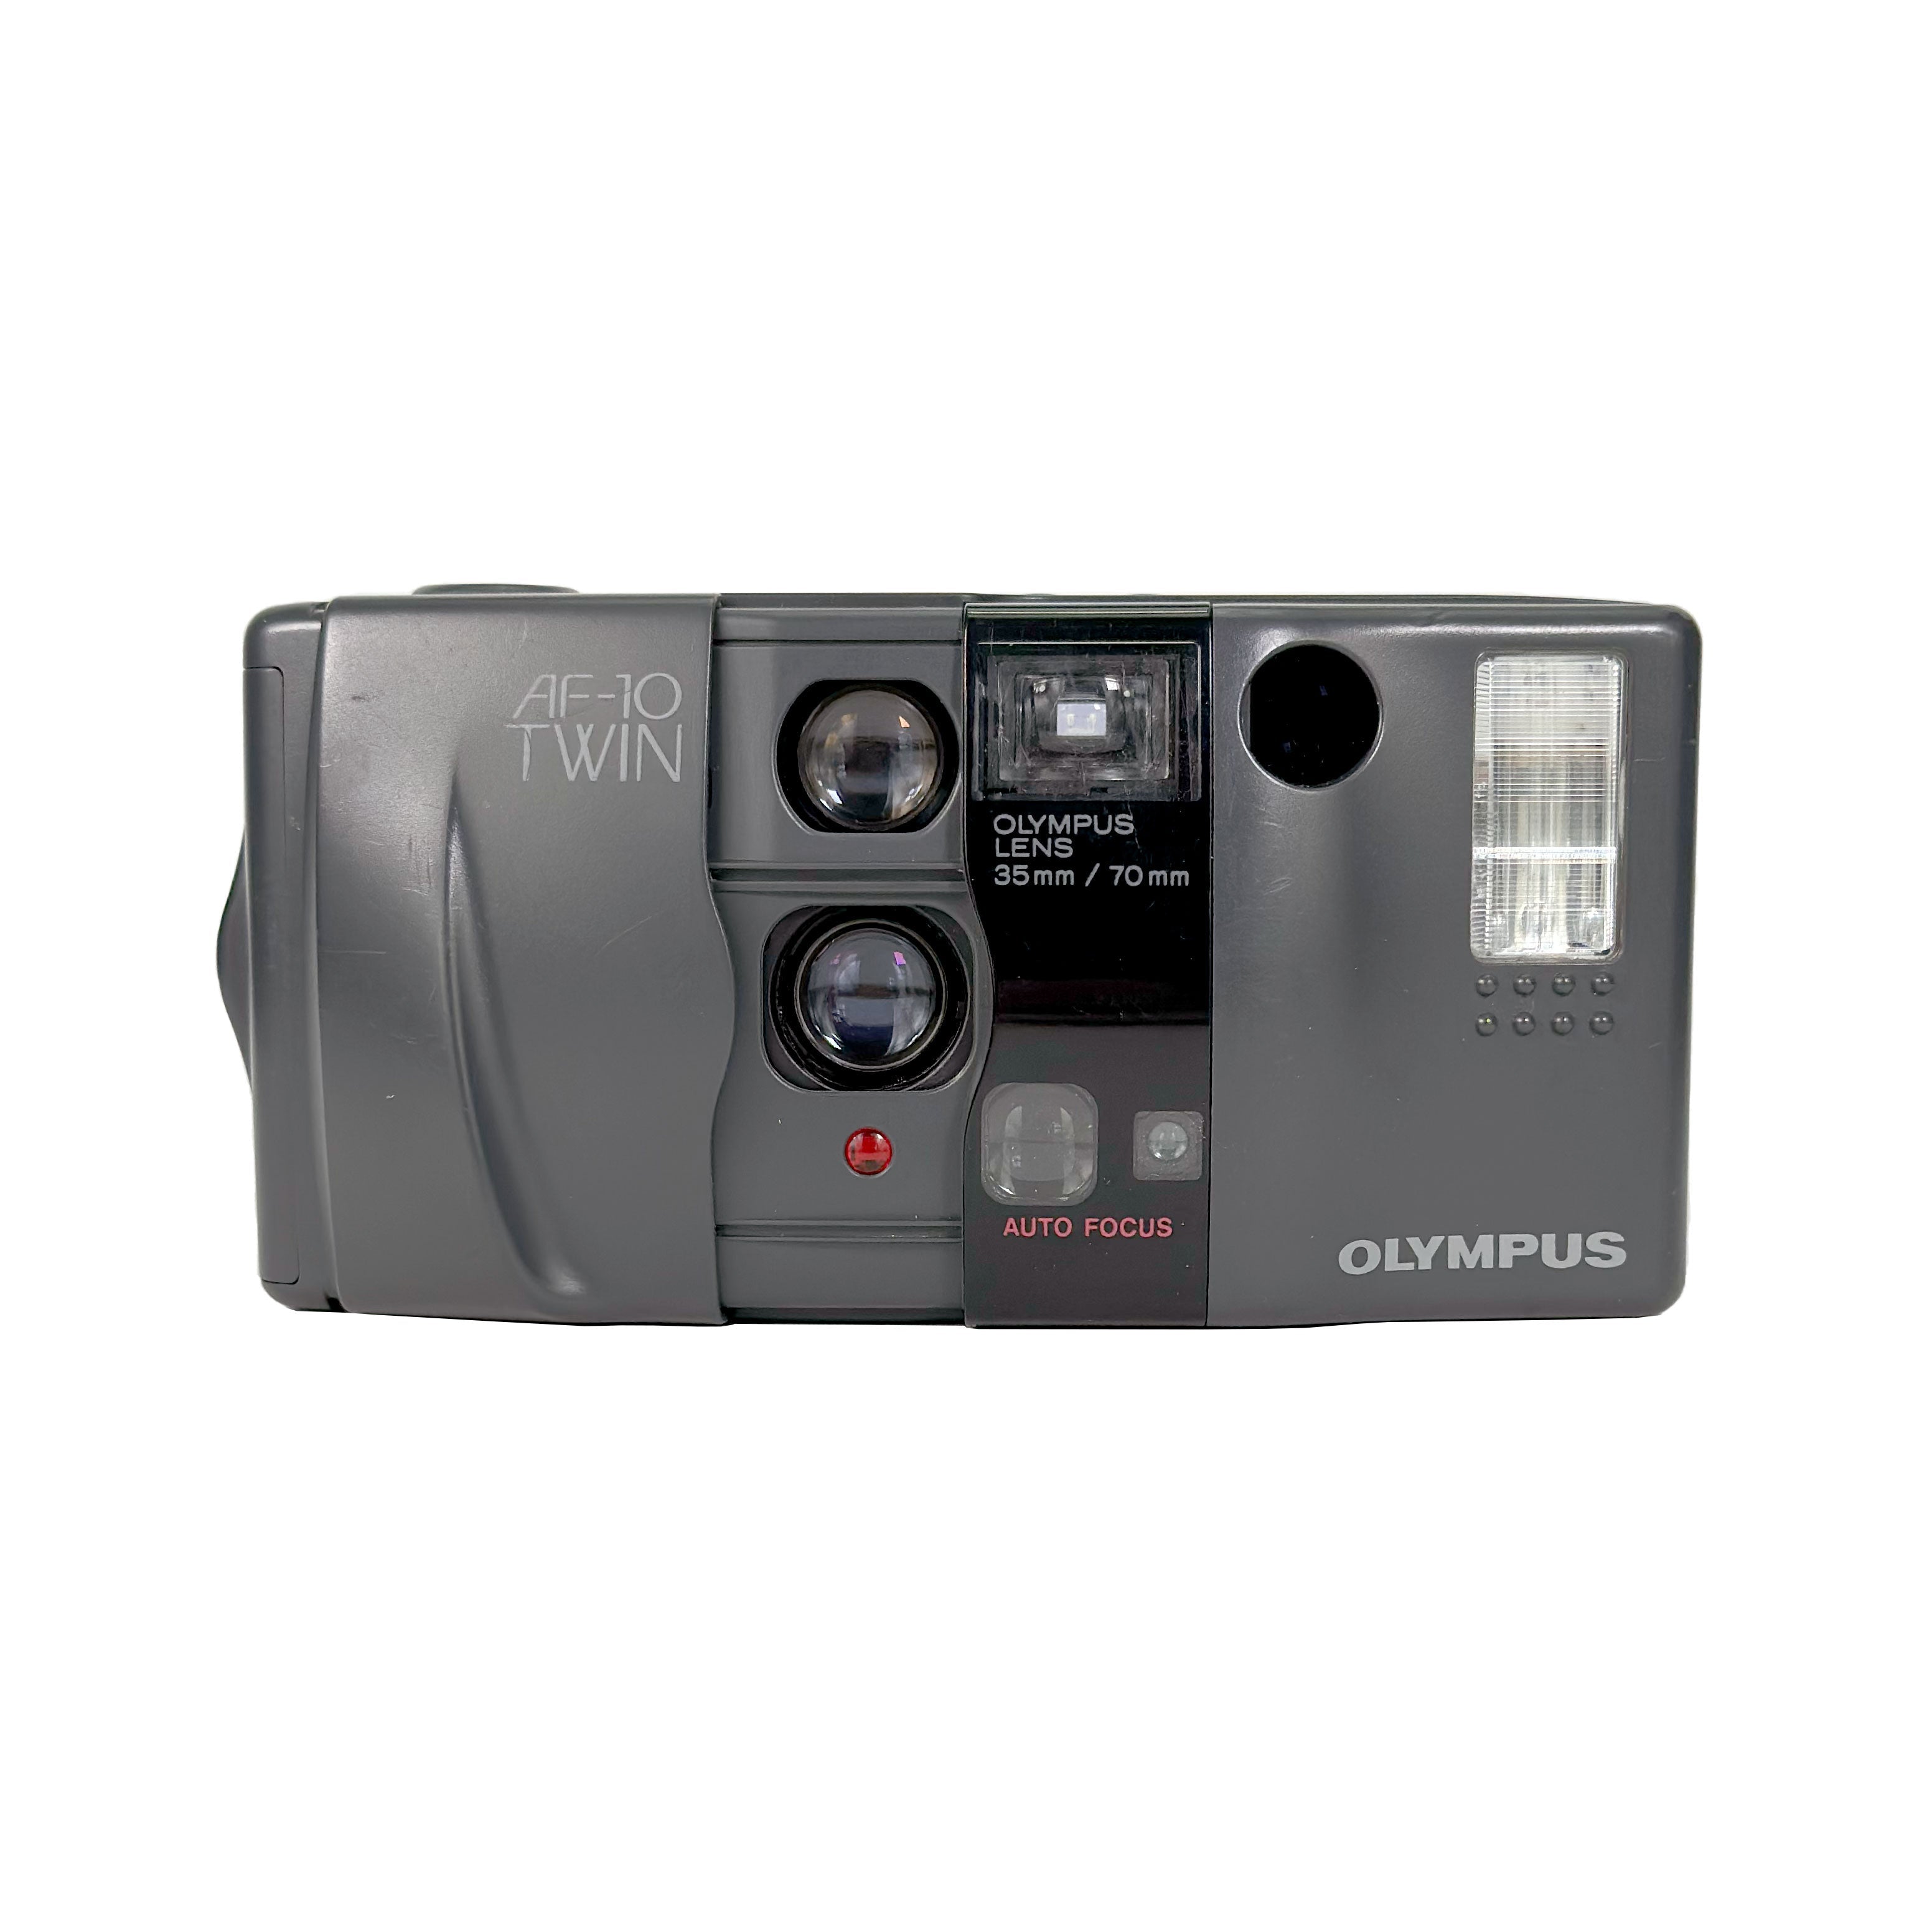 Olympus AF-10 Twin – Retro Camera Shop